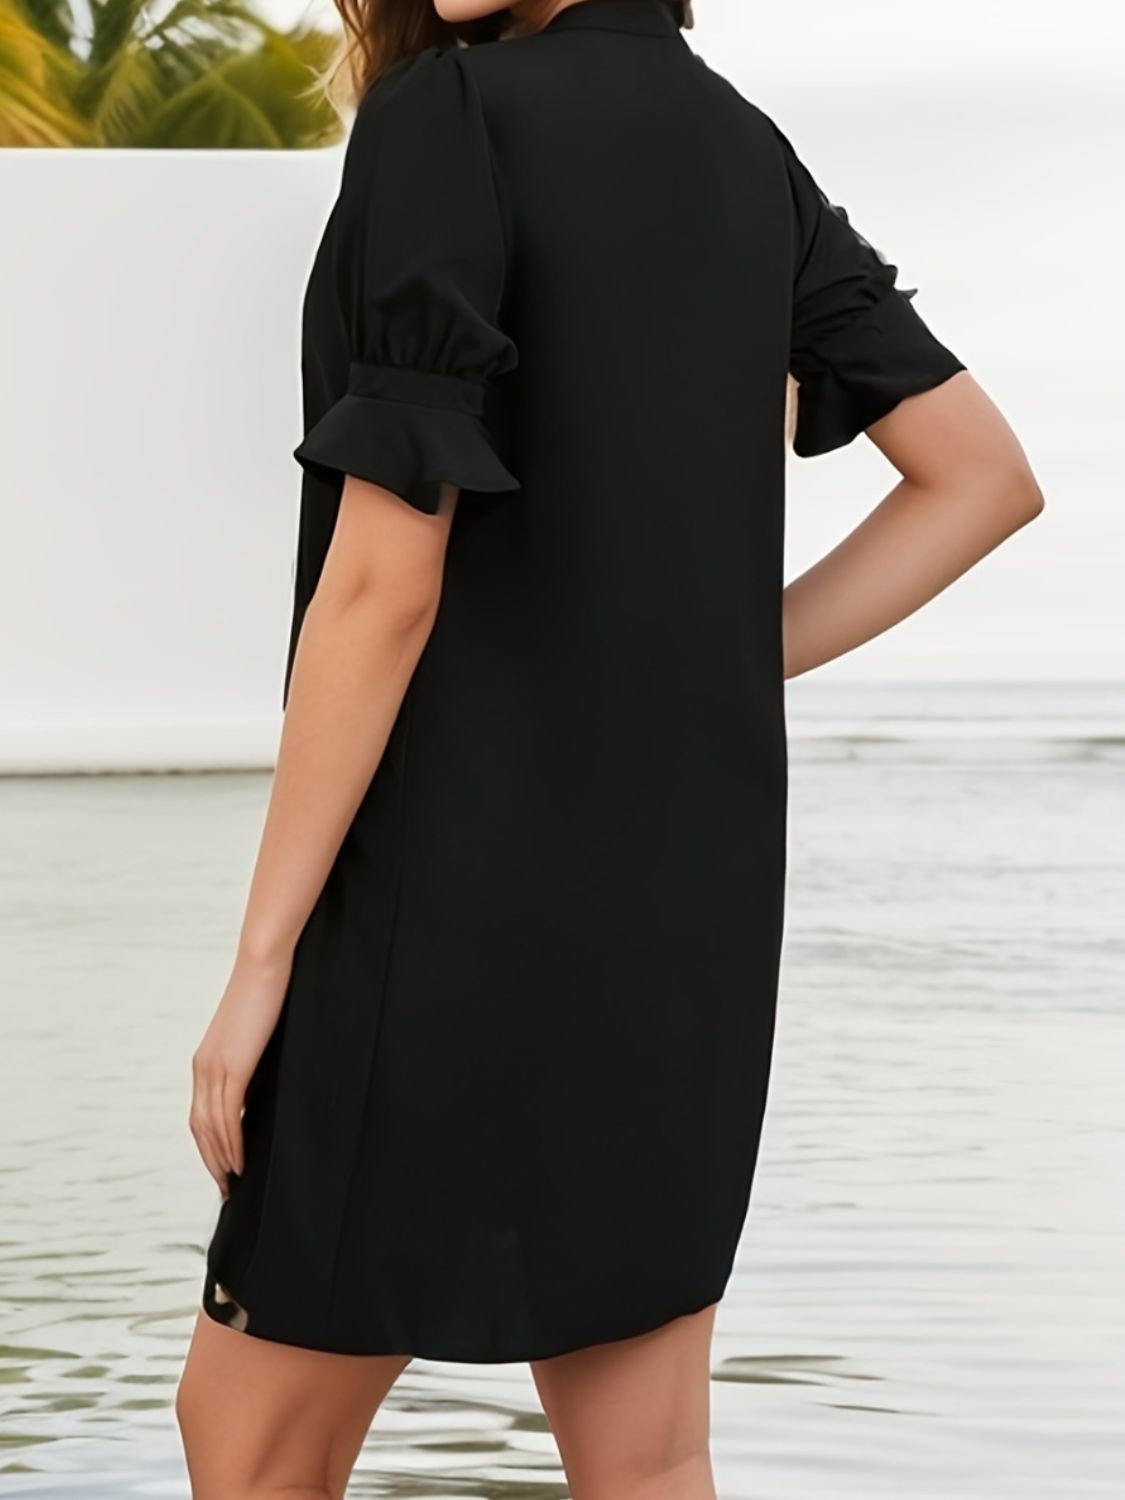 TEEK - Nicely Notched Flounce Sleeve Dress DRESS TEEK Trend   